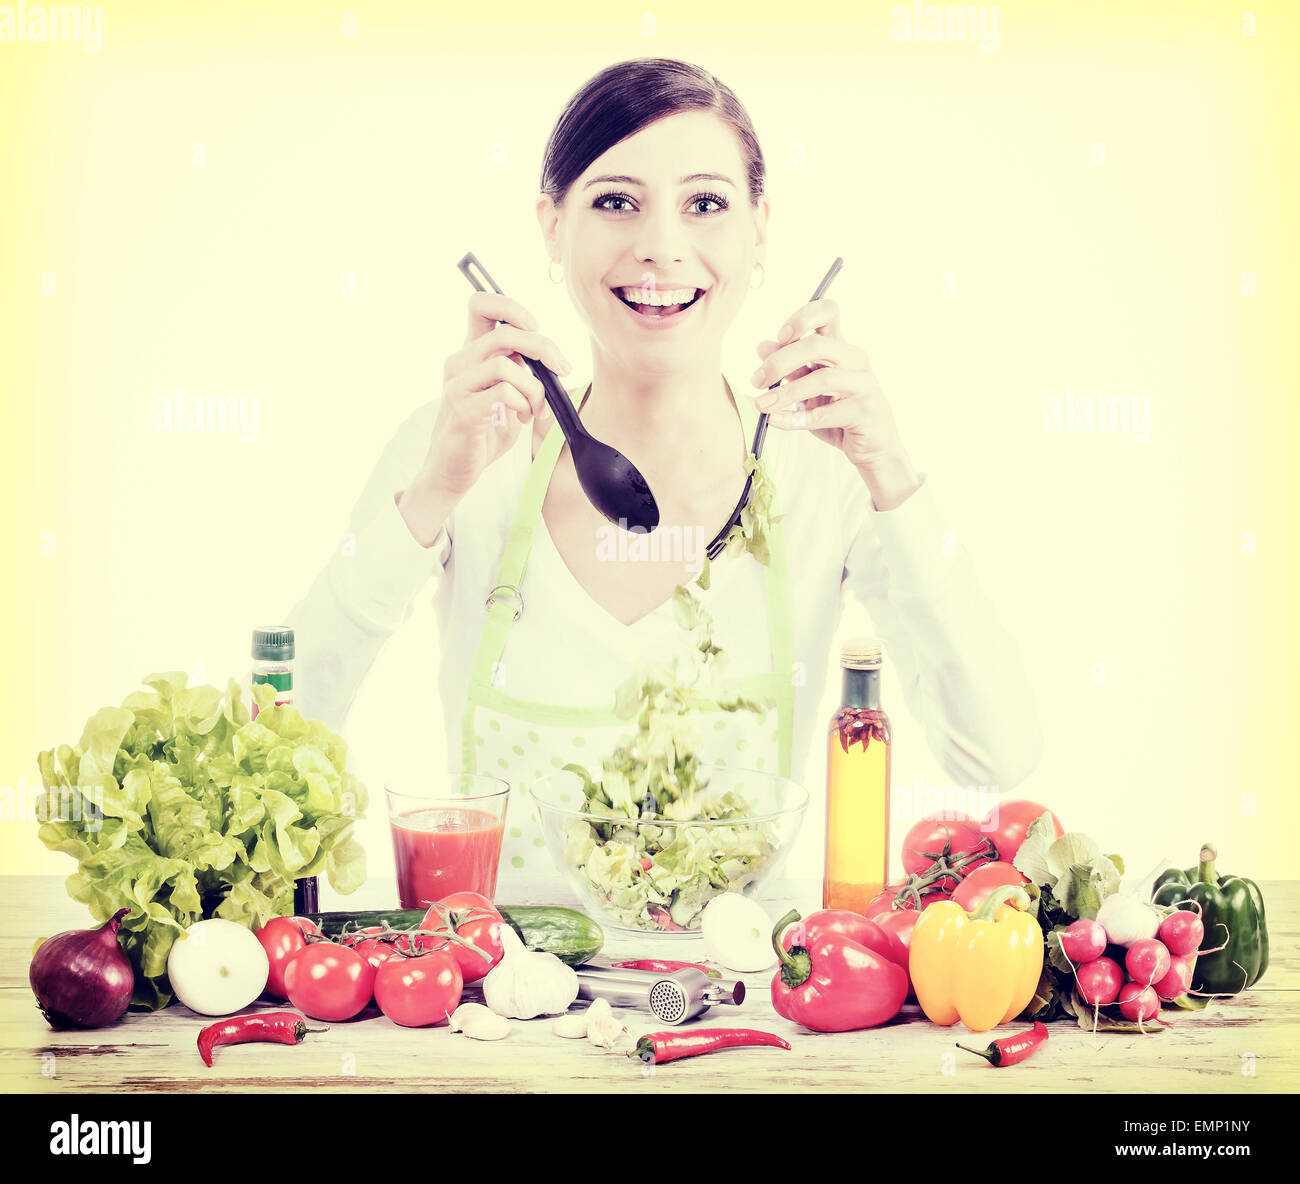 Filtrée Retro photo d'une femme au foyer heureuse la préparation de salade, une nourriture saine ou l'alimentation concept. Banque D'Images